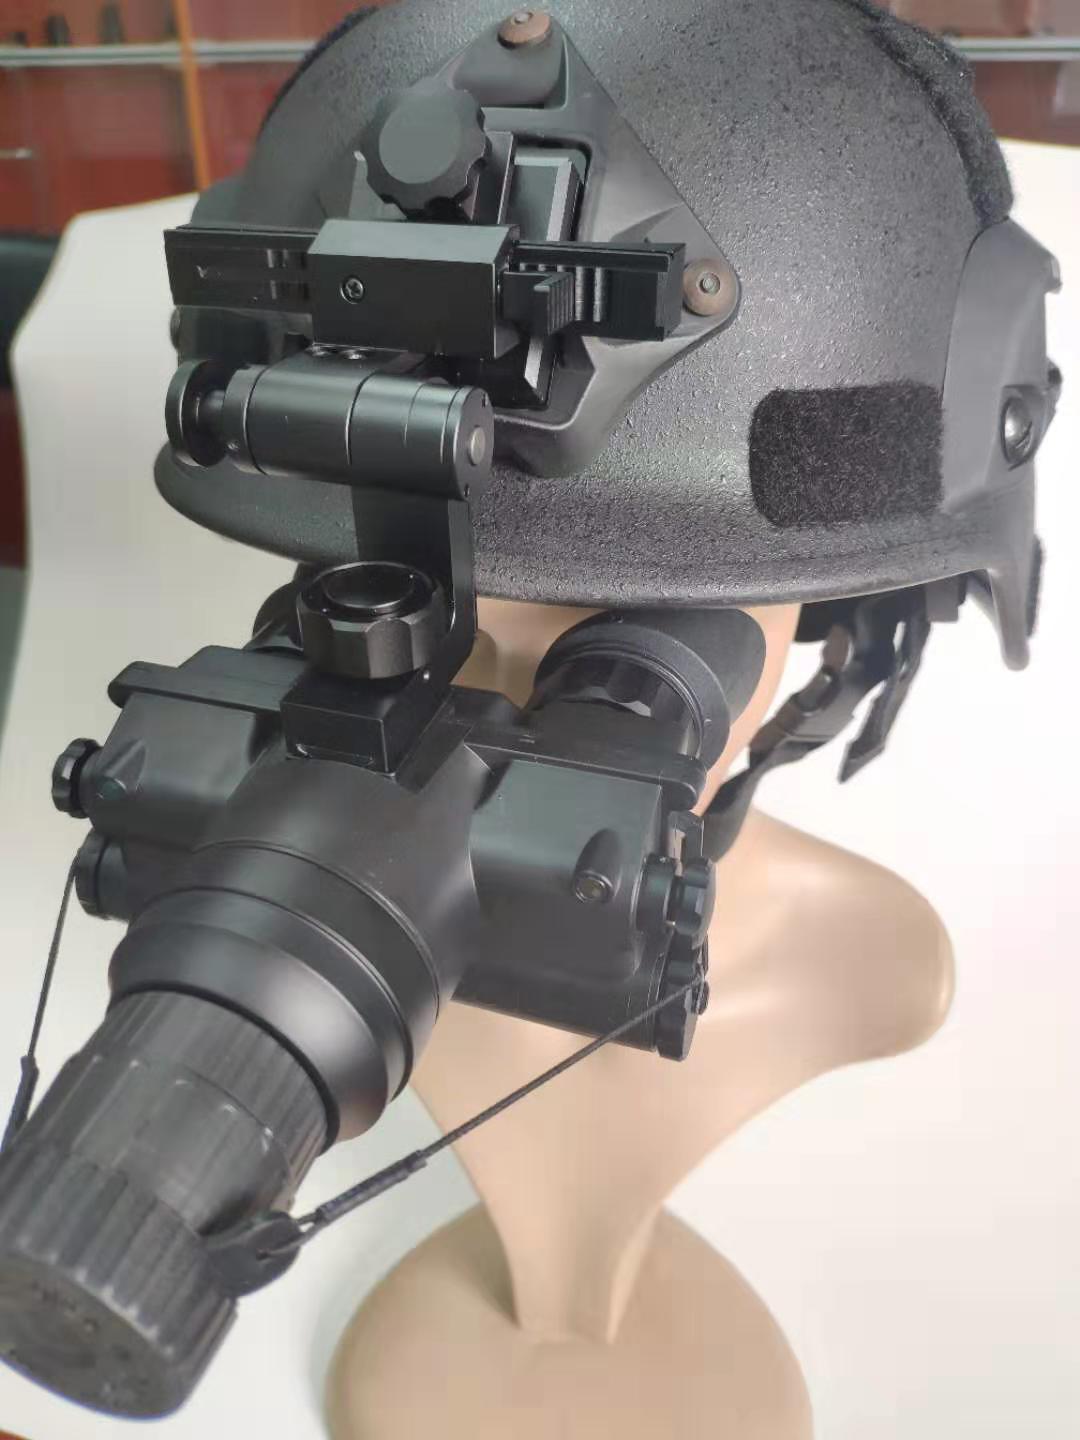 Helmet mounted Night Vision binoculars